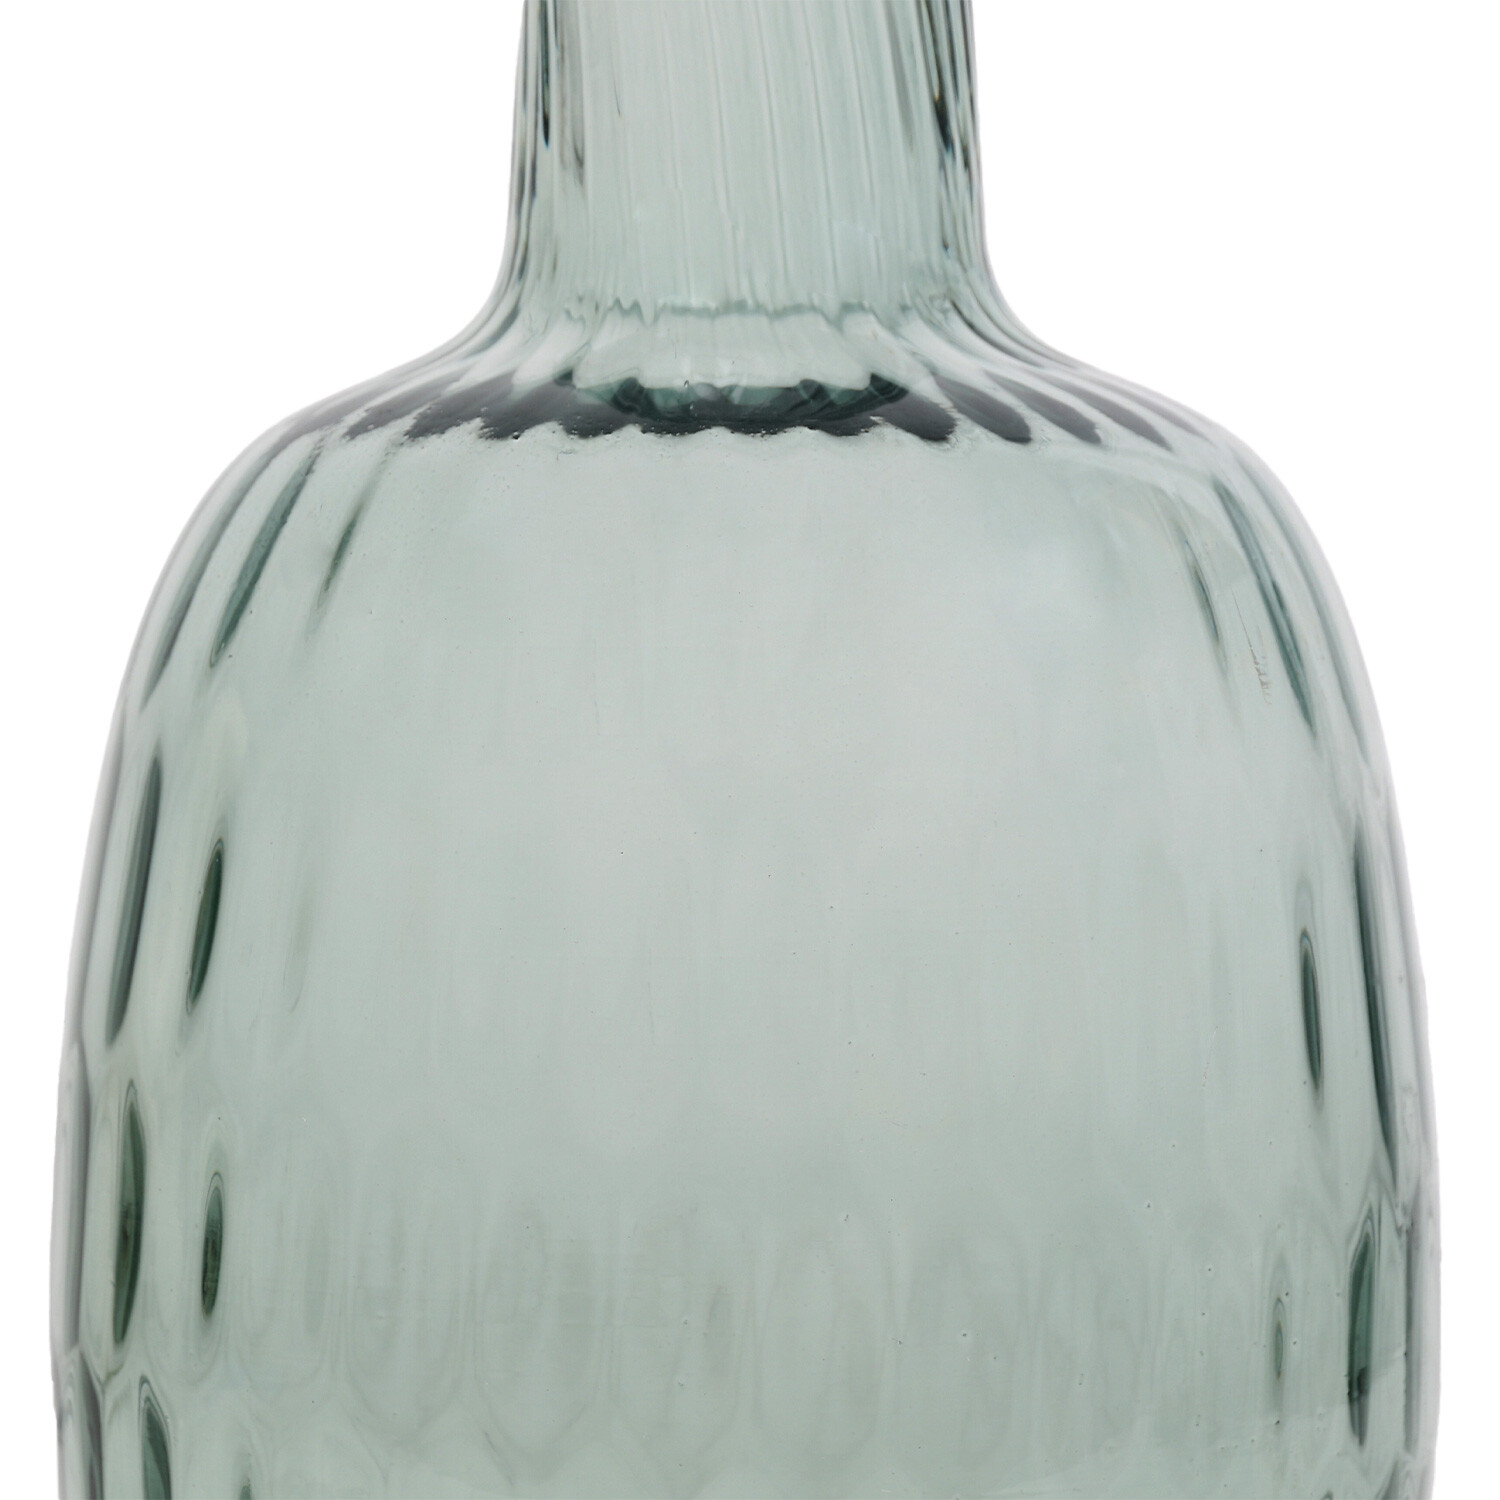 Laila Glass Vase - Ocean Green Image 2